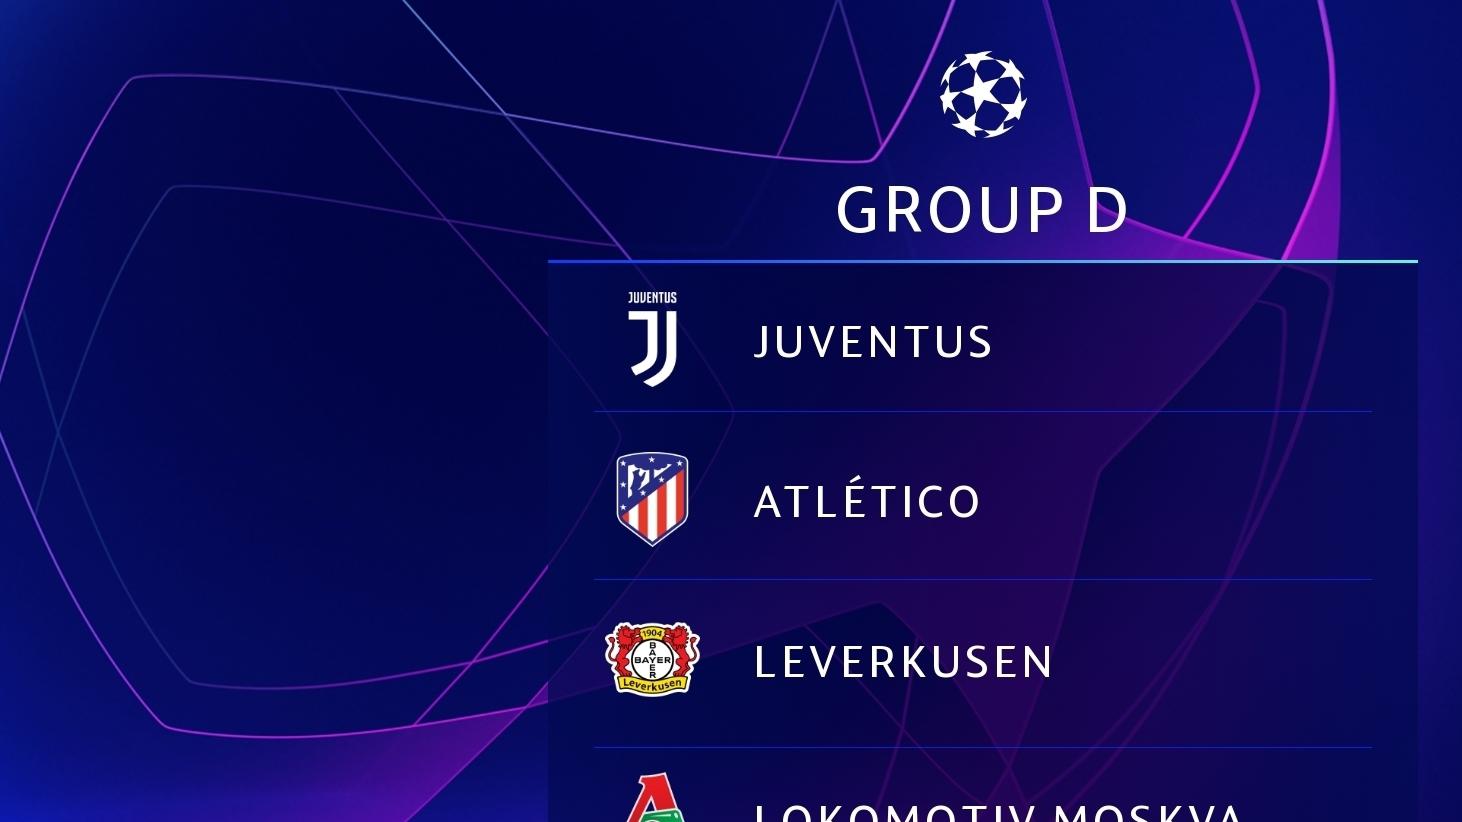 Classificação do Grupo A da UEFA Champions League